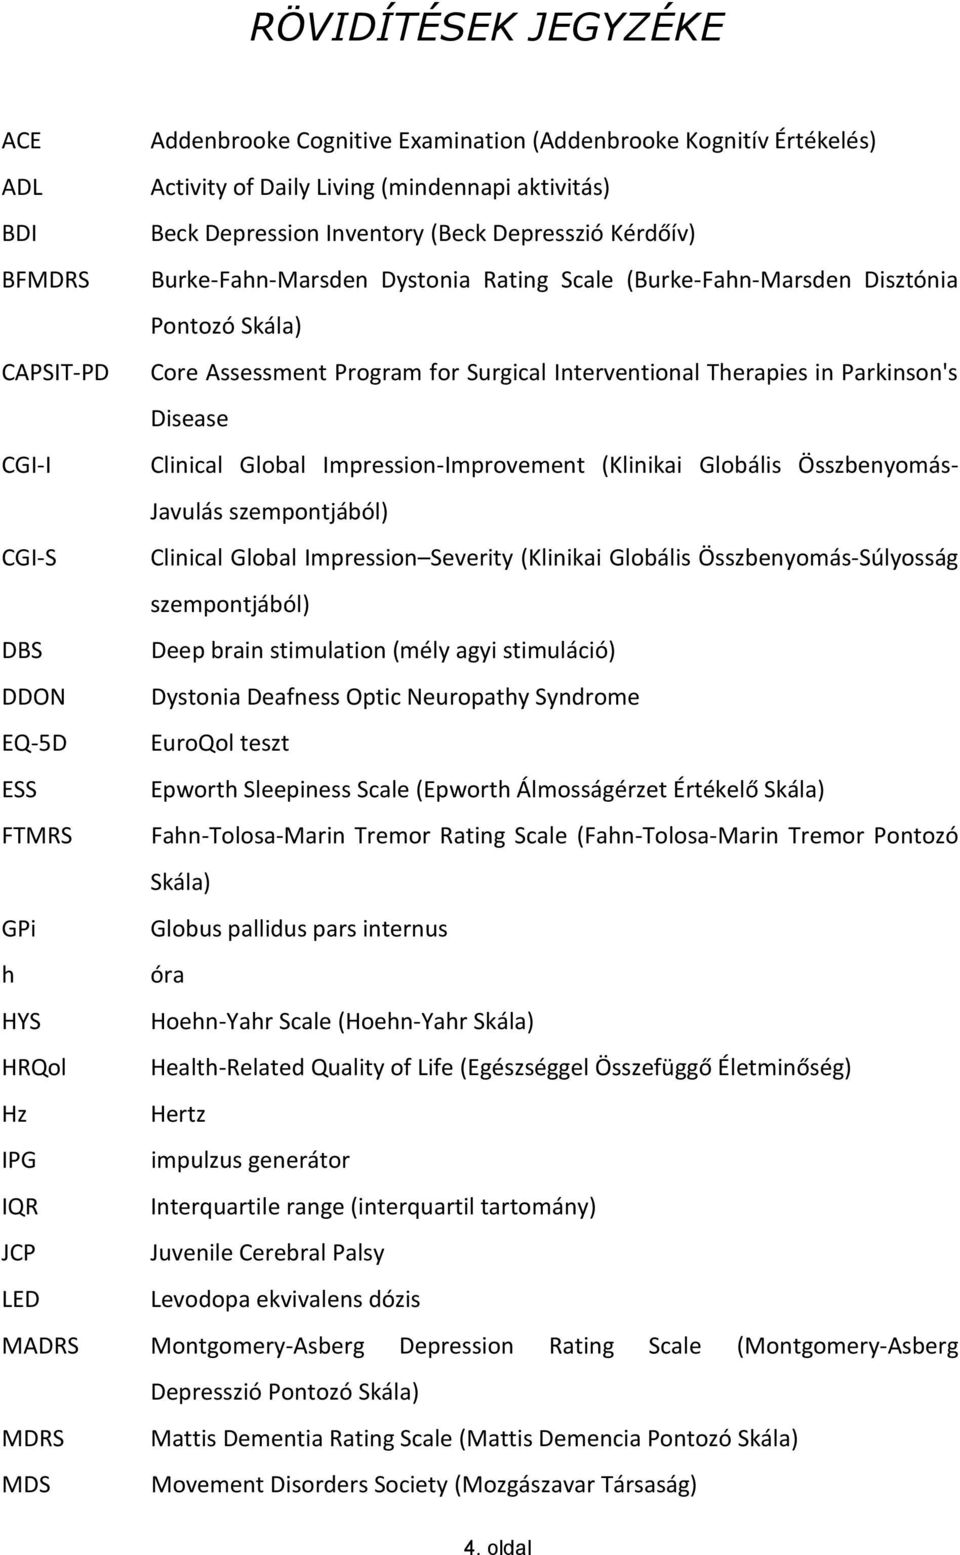 Clinical Global Impression-Improvement (Klinikai Globális Összbenyomás- Javulás szempontjából) CGI-S Clinical Global Impression Severity (Klinikai Globális Összbenyomás-Súlyosság szempontjából) DBS